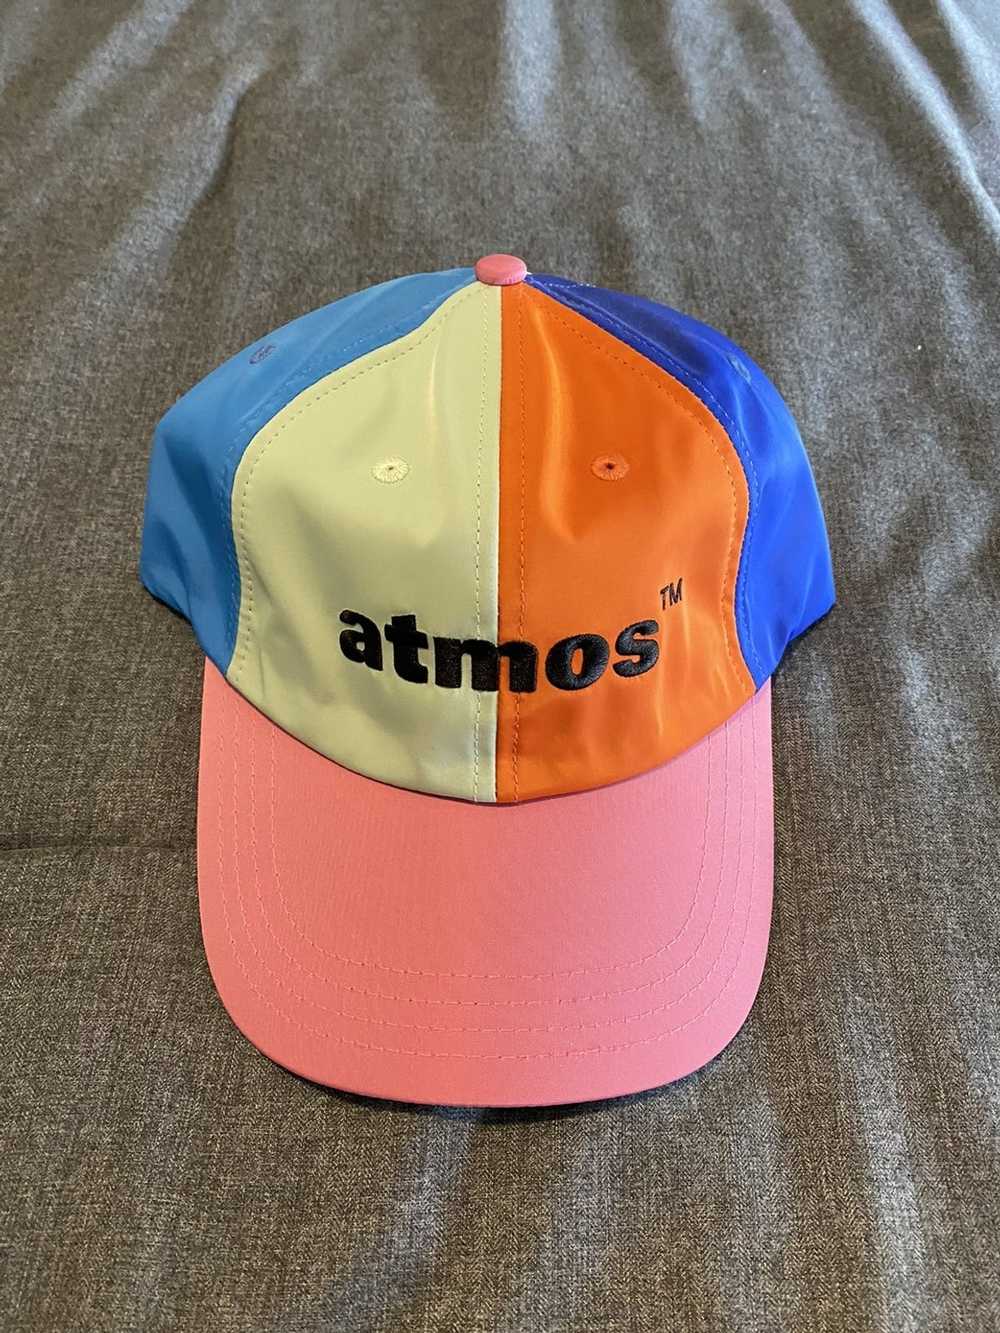 Atmos Atmos Multicolor Snapback - image 1